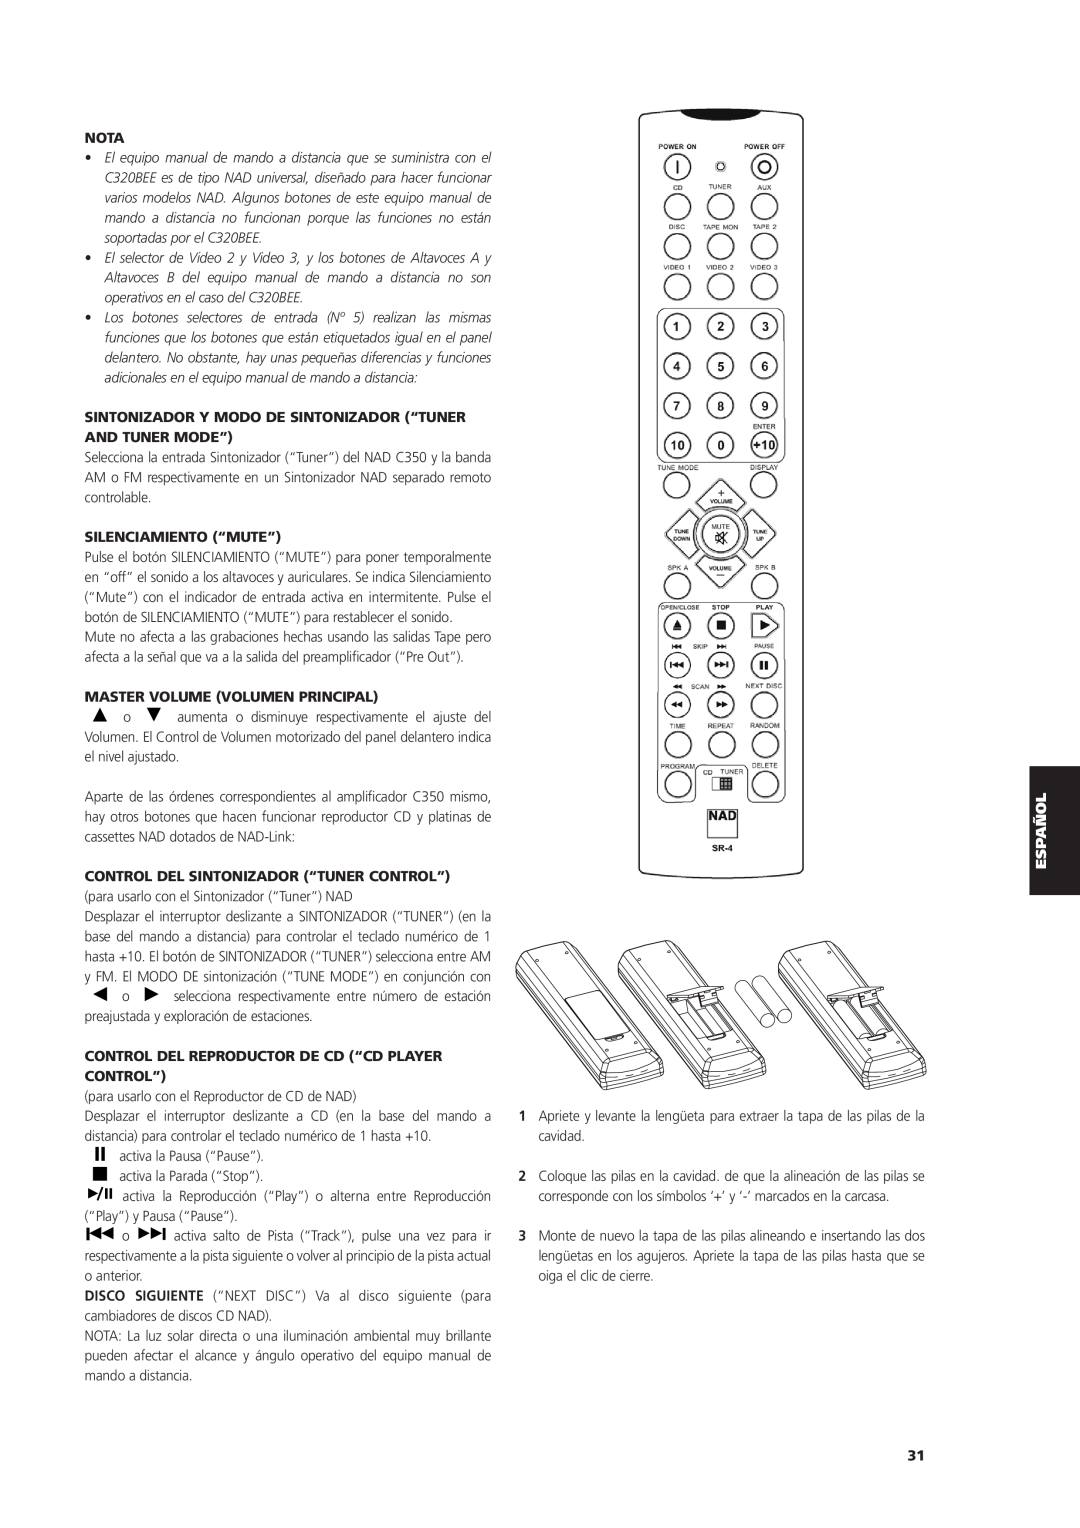 NAD C 320BEE Silenciamiento “Mute”, Master Volume Volumen Principal, Control Del Sintonizador “Tuner Control”, Nota 